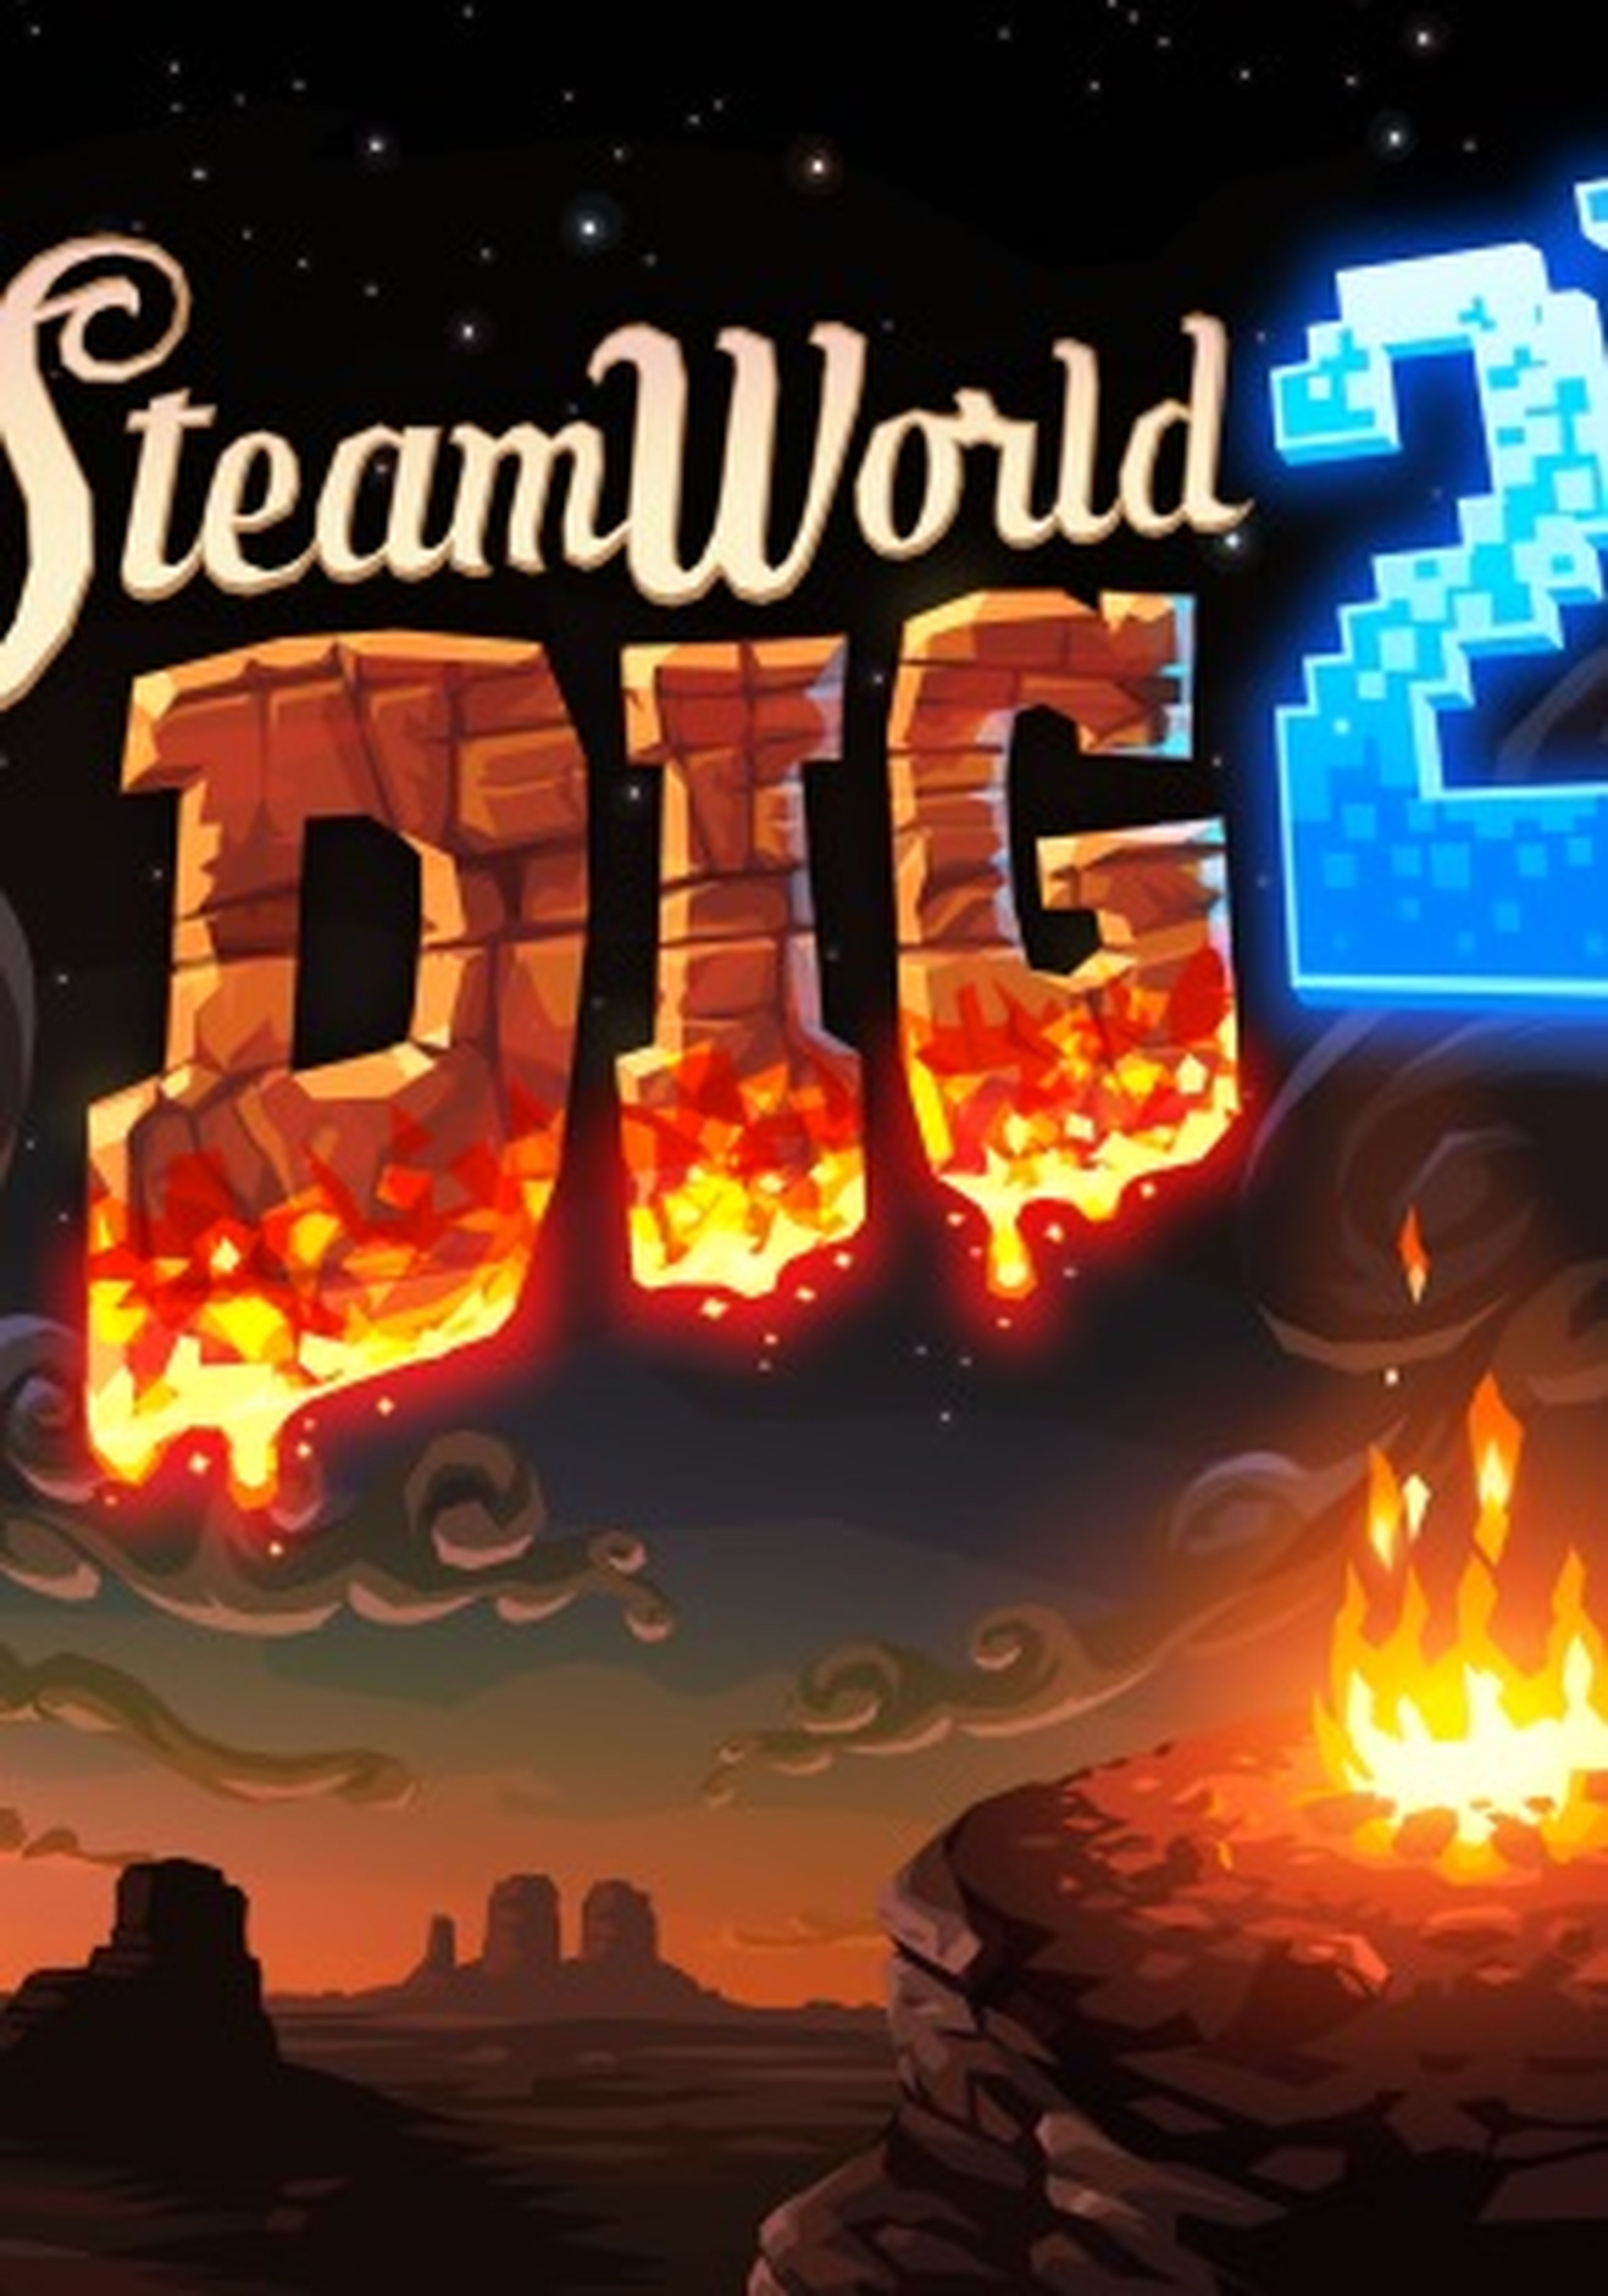 SteamWorld Dig 2 Portada